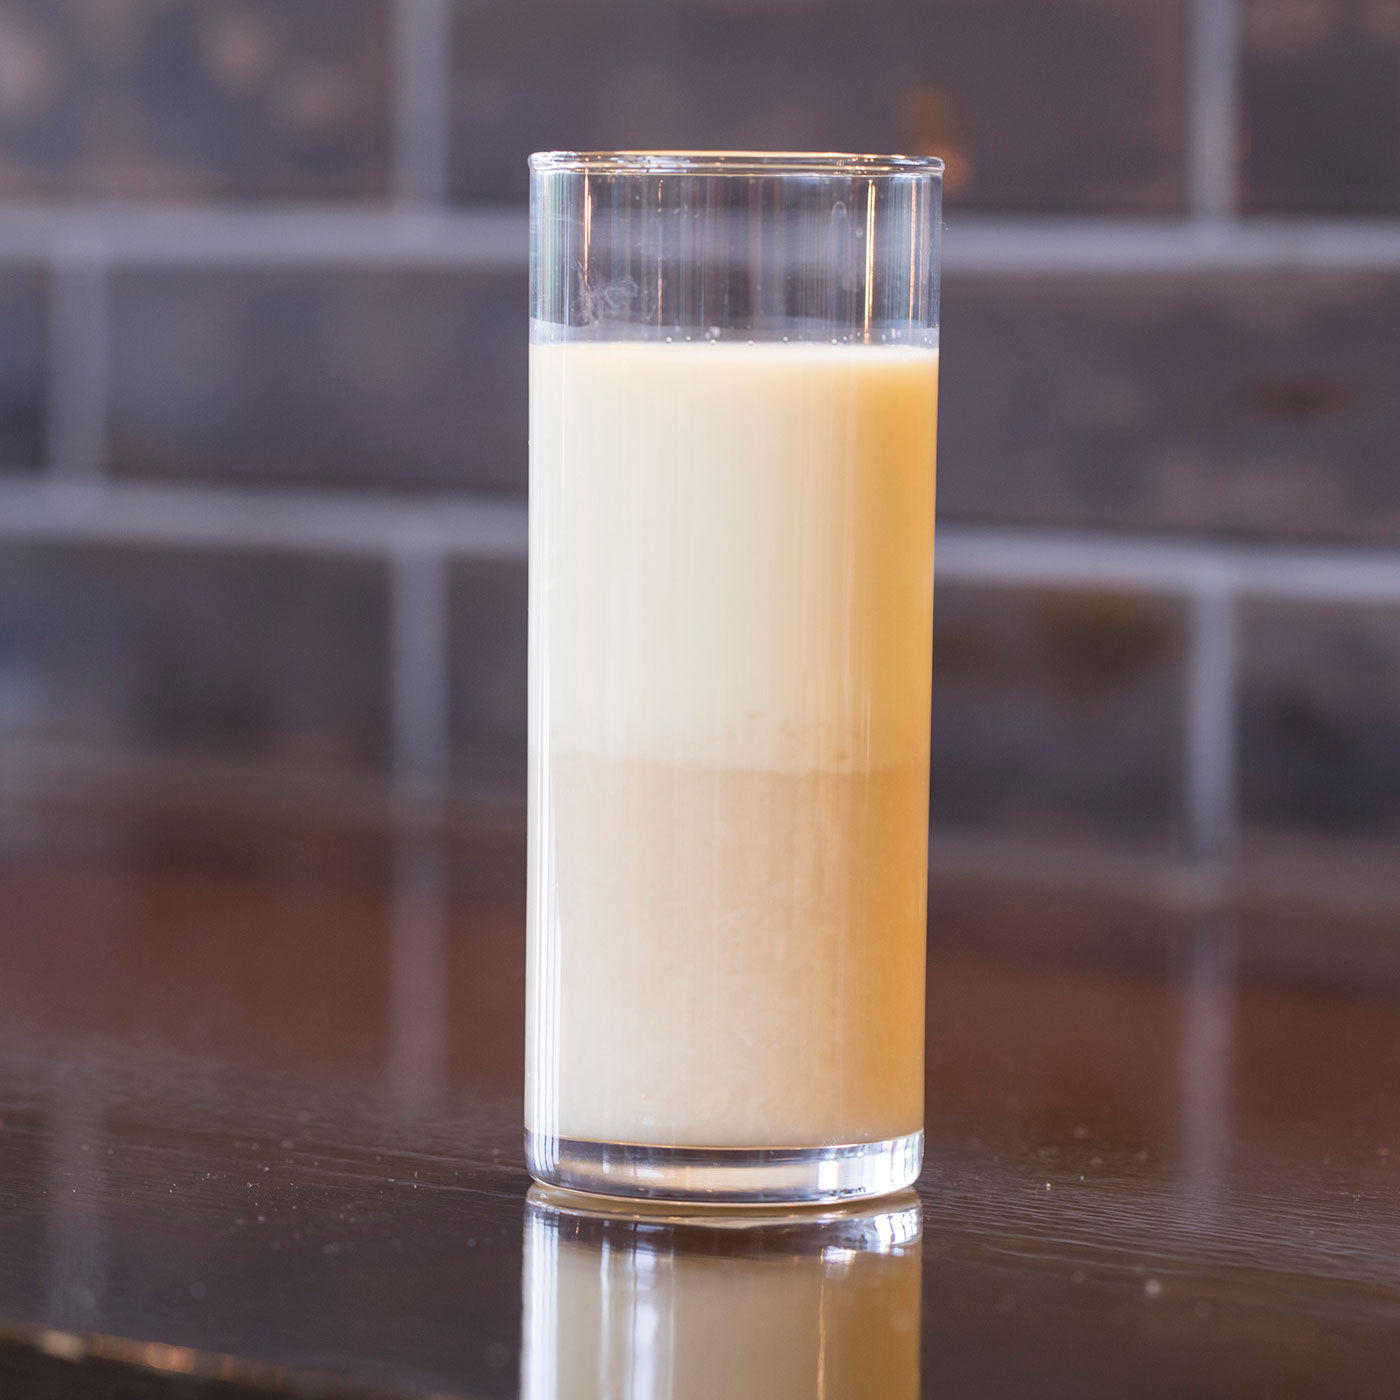 Natucul Chou Club(ナチュカル・シュークラブ)|熊本貝島商店のおちちあまざけ|【甘酒豆乳割り】豆乳とおちちあまざけ濃縮タイプを1:1でカップに入れてかき混ぜるだけ。美容と健康にオススメの一杯。